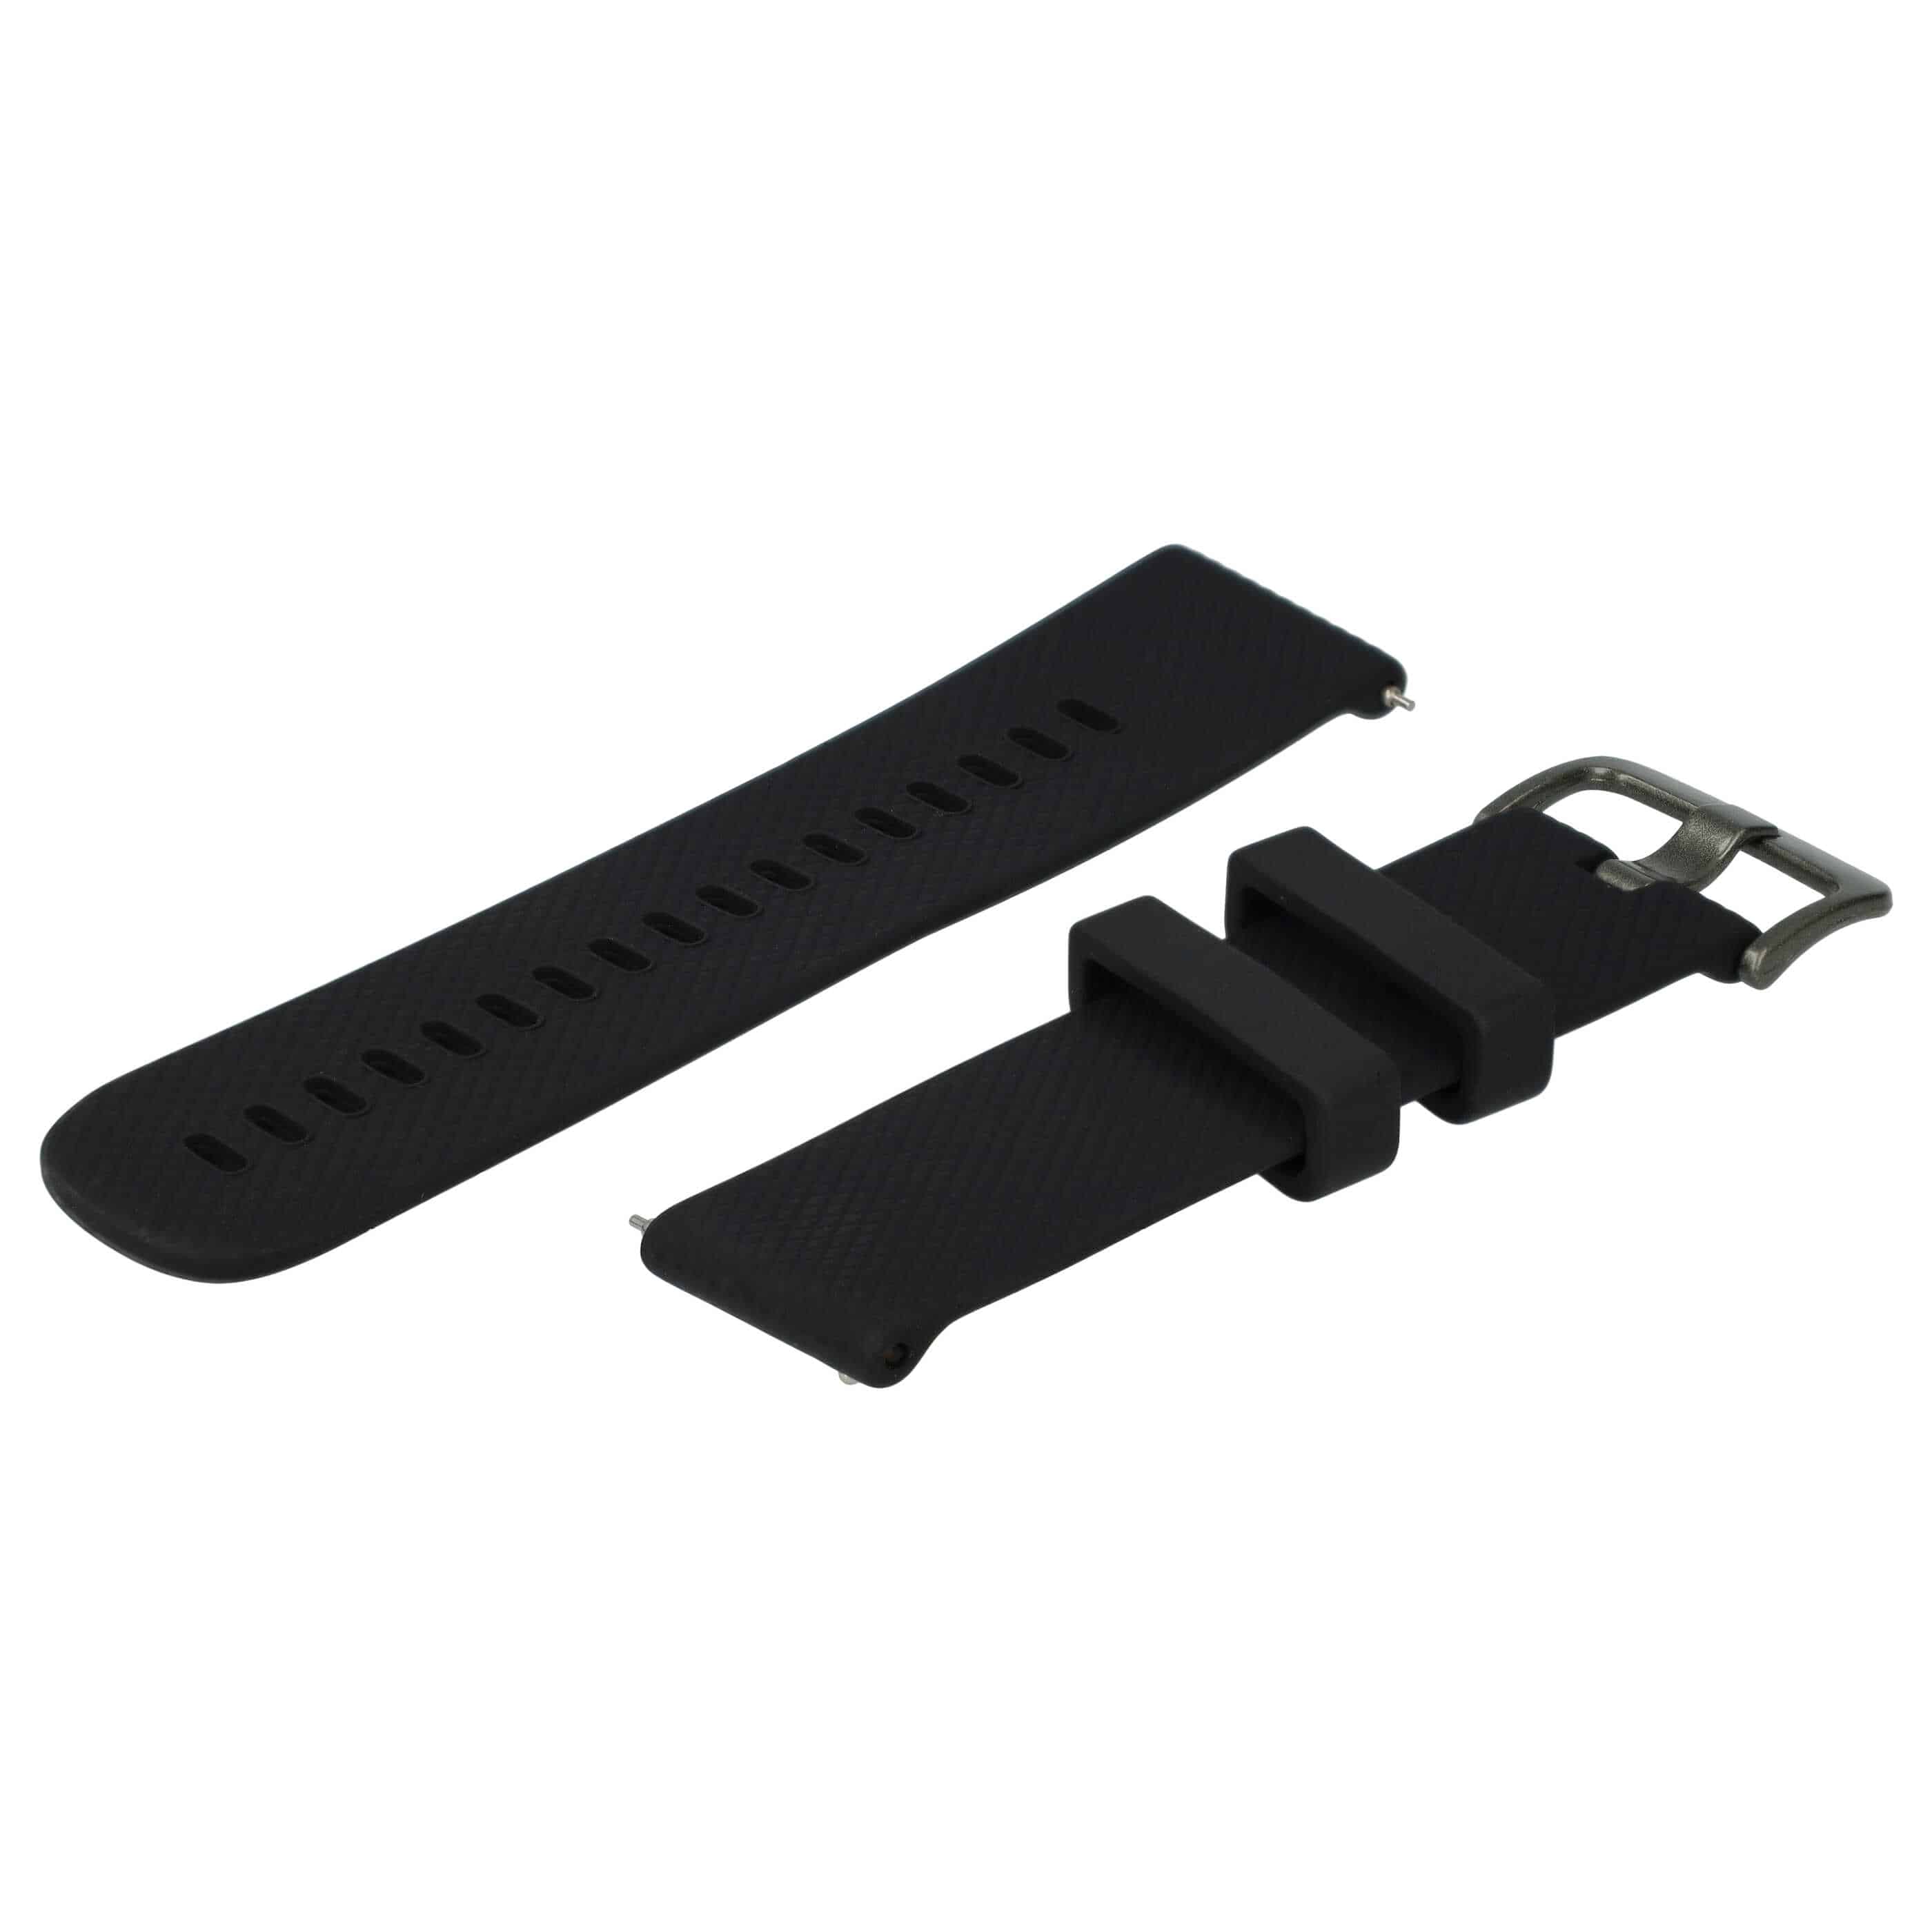 Armband S für Samsung Galaxy Watch Smartwatch - Bis 232 mm Gelenkumfang, Silikon, schwarz